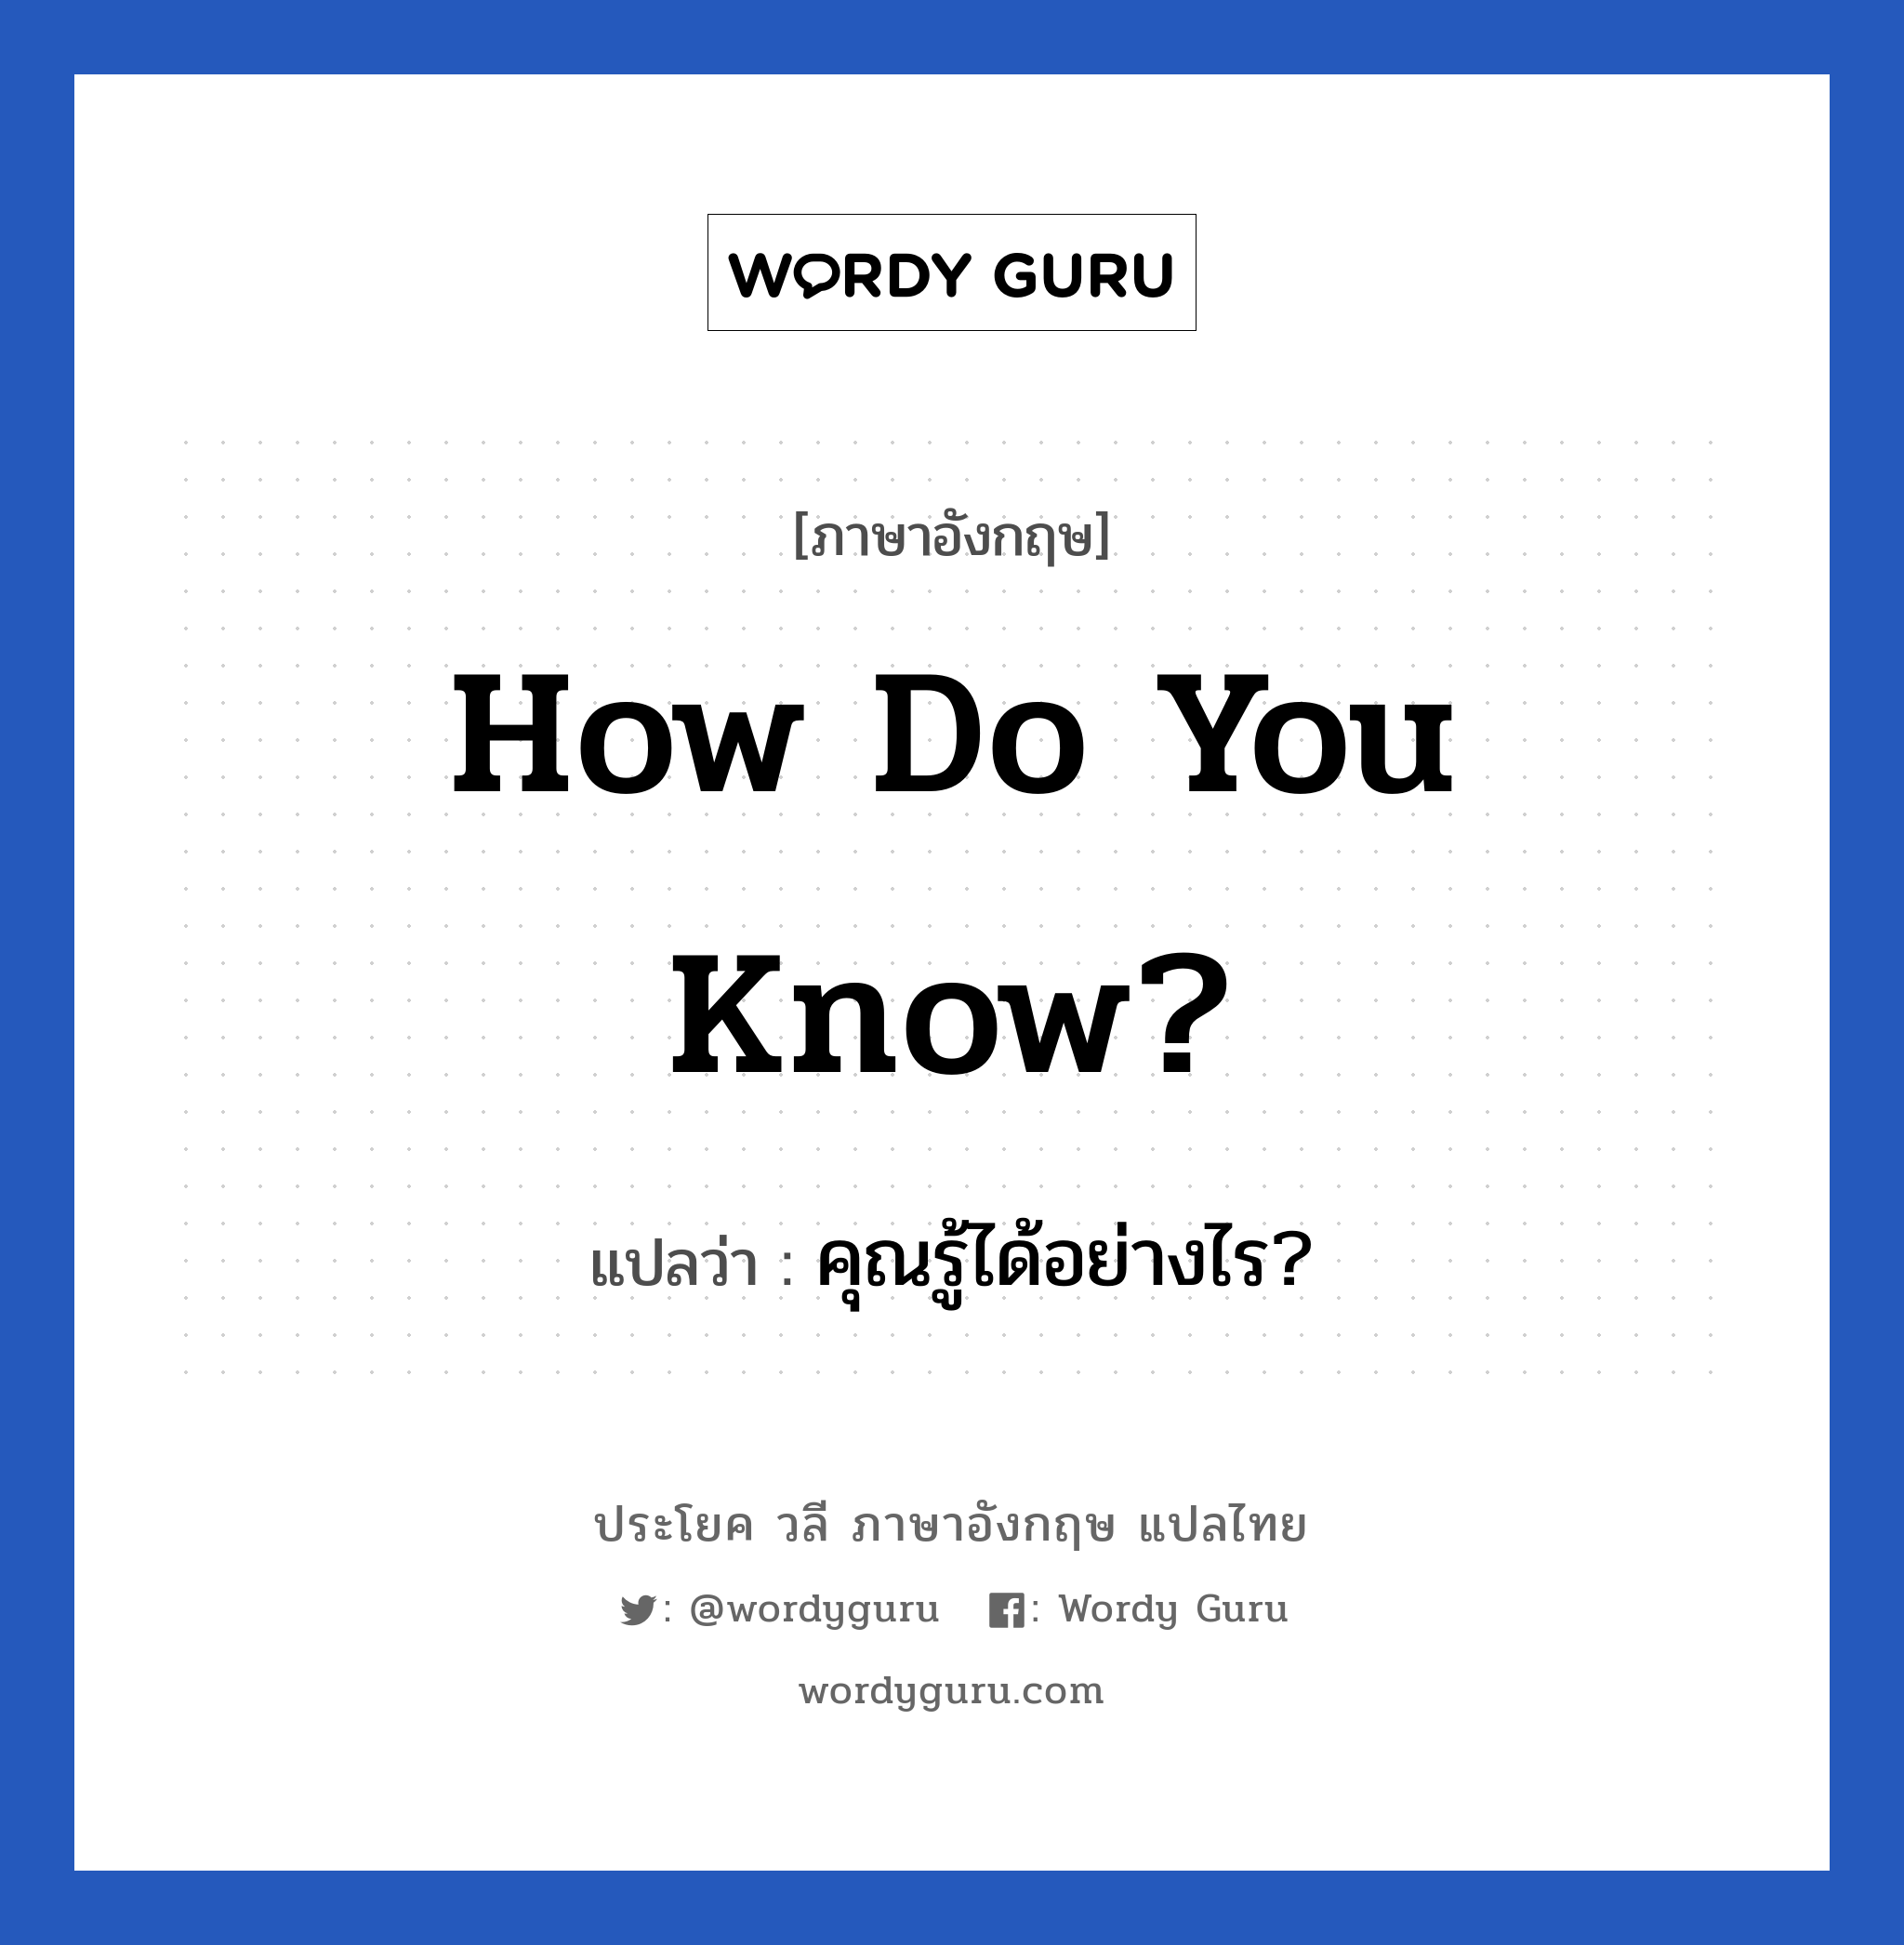 คุณรู้ได้อย่างไร? ภาษาอังกฤษ?, วลีภาษาอังกฤษ คุณรู้ได้อย่างไร? แปลว่า How do you know?